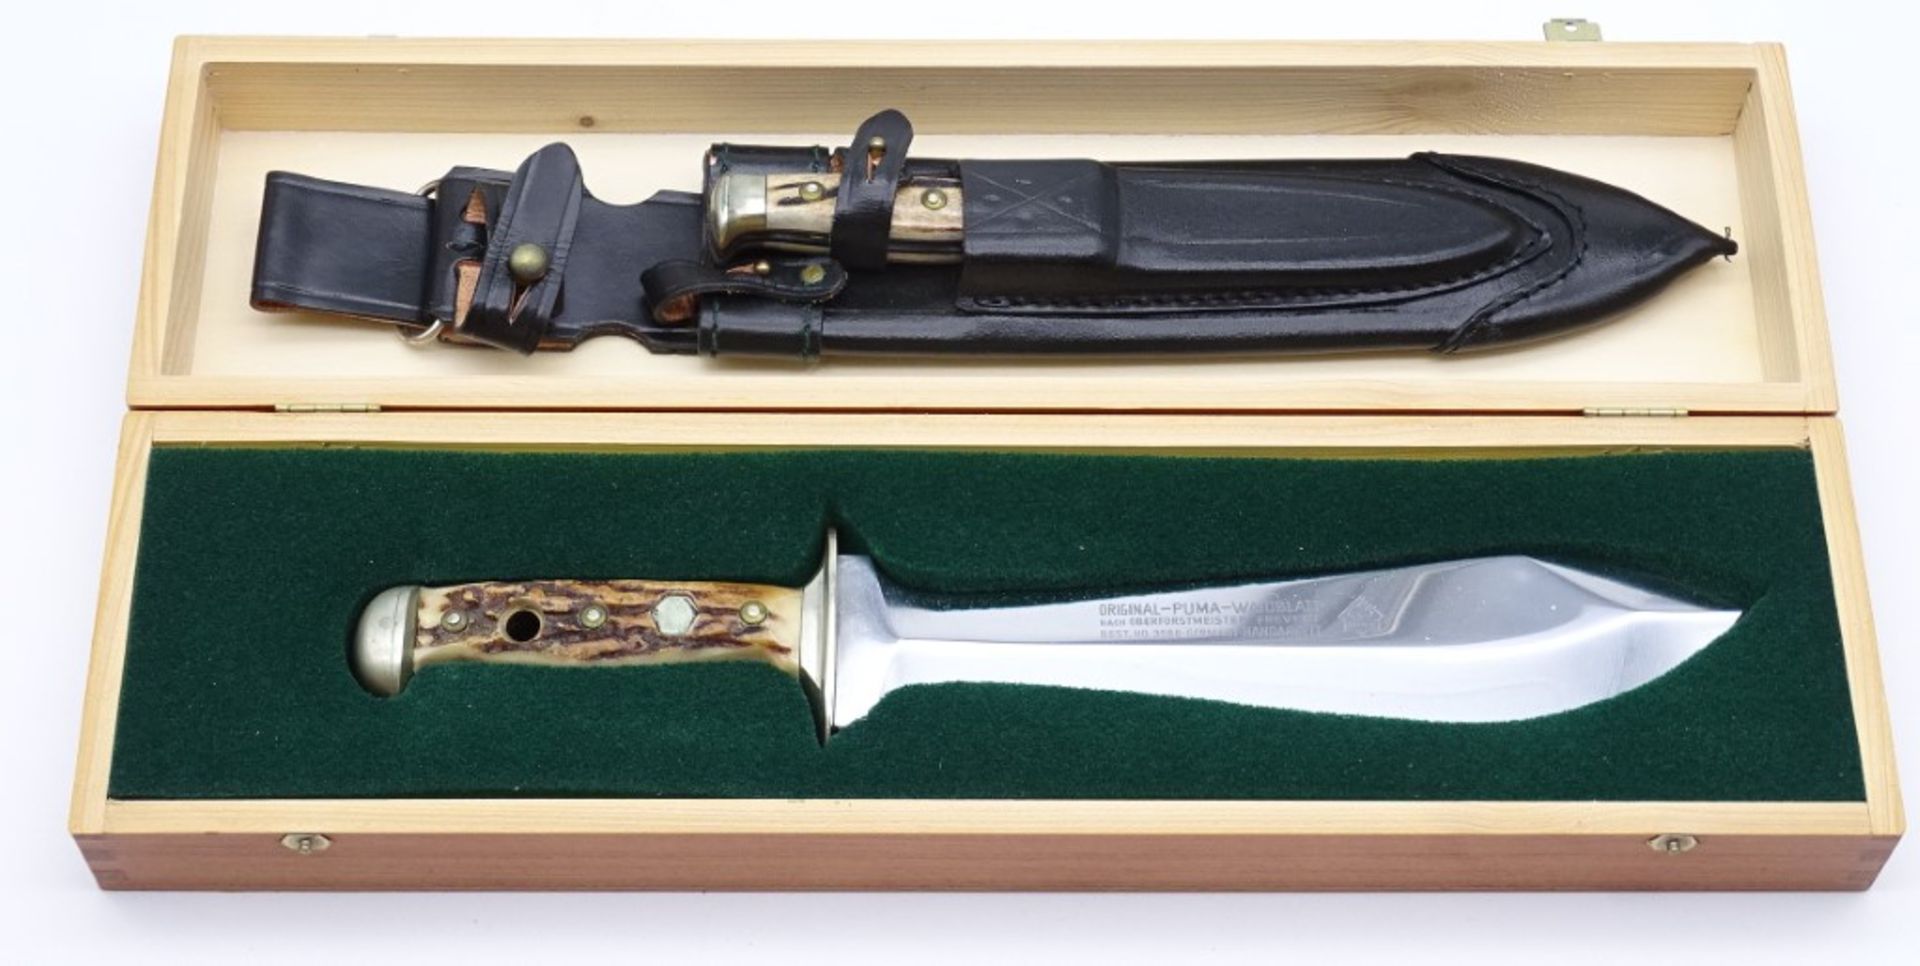 PUMA Waidbesteck Waidblatt Messer in Holzkasten, No. 3588, L. 33,0cm, mit Scheide u. kl. Messer